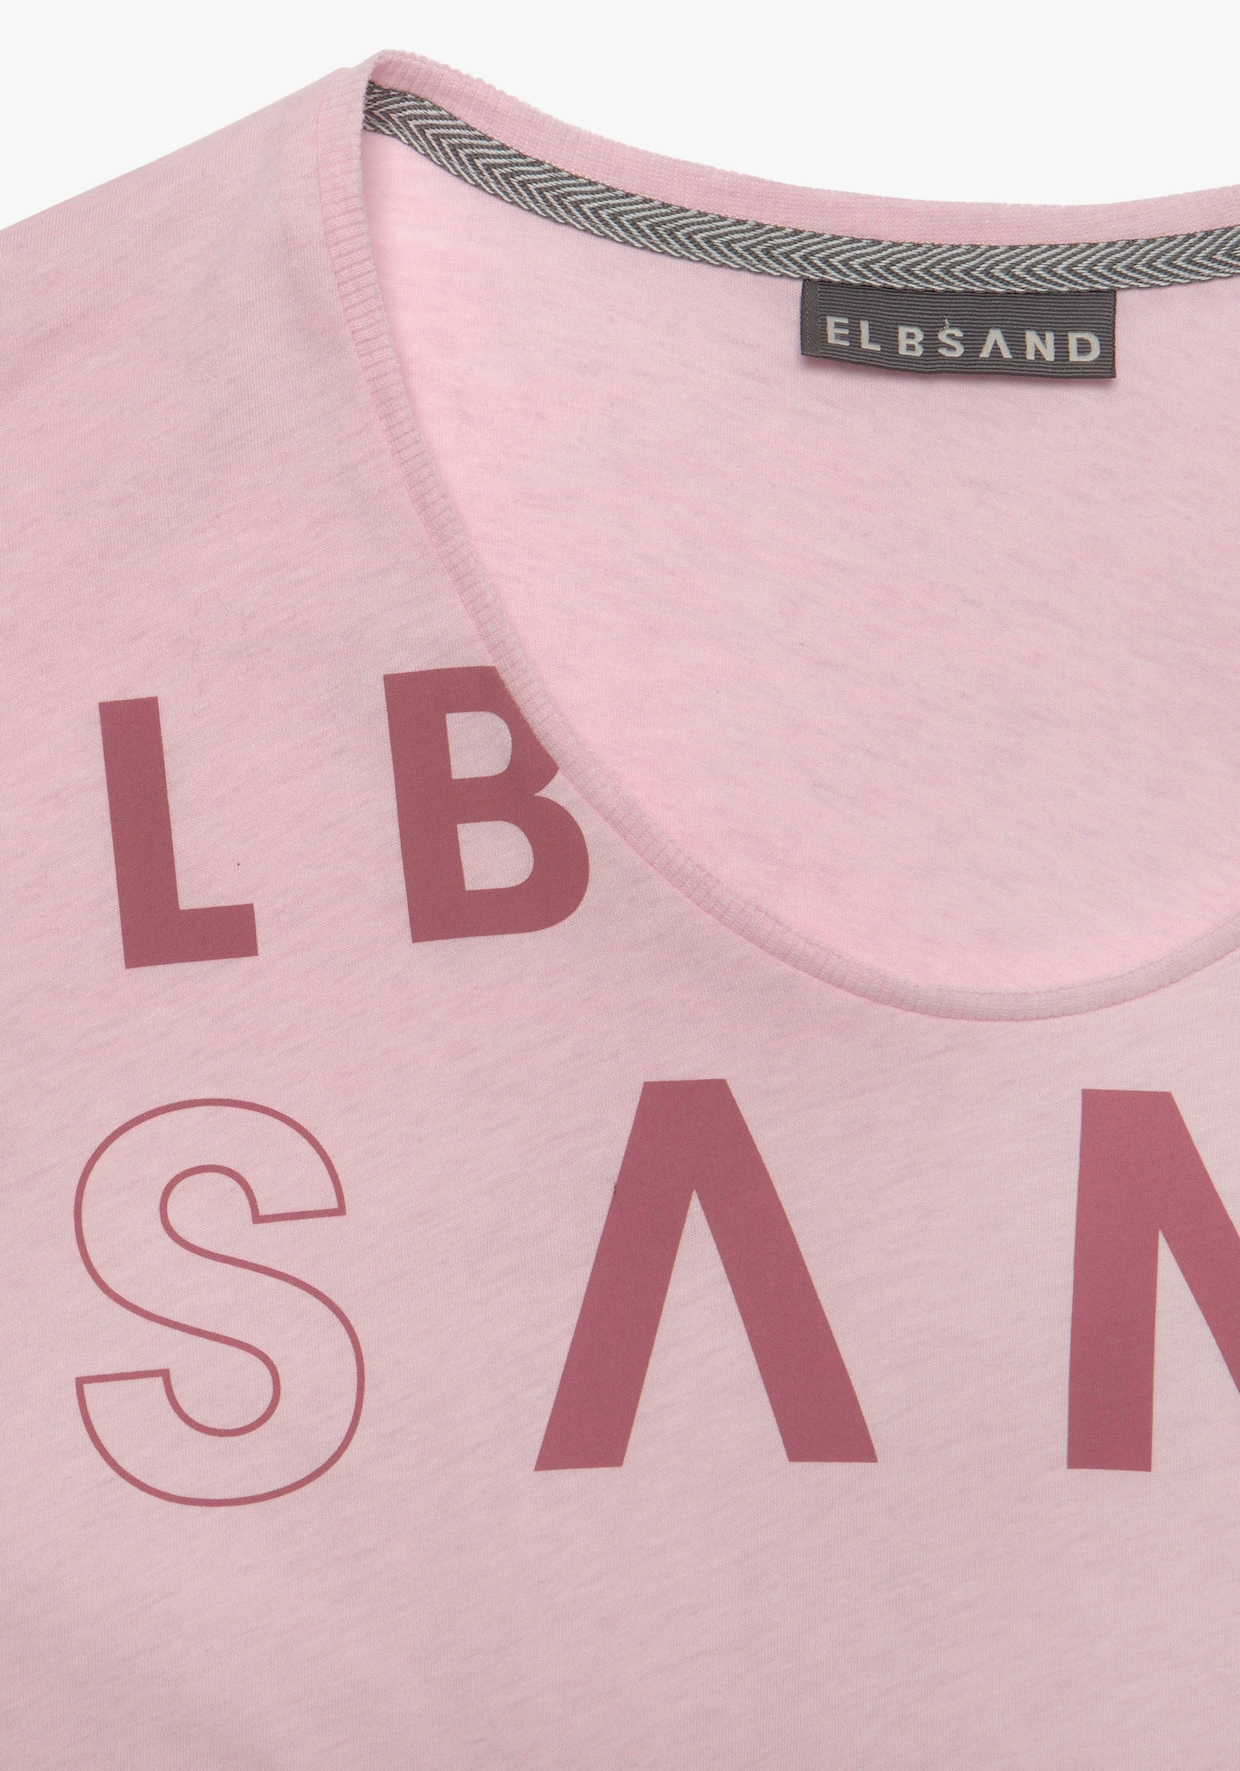 Elbsand T-shirt - roze